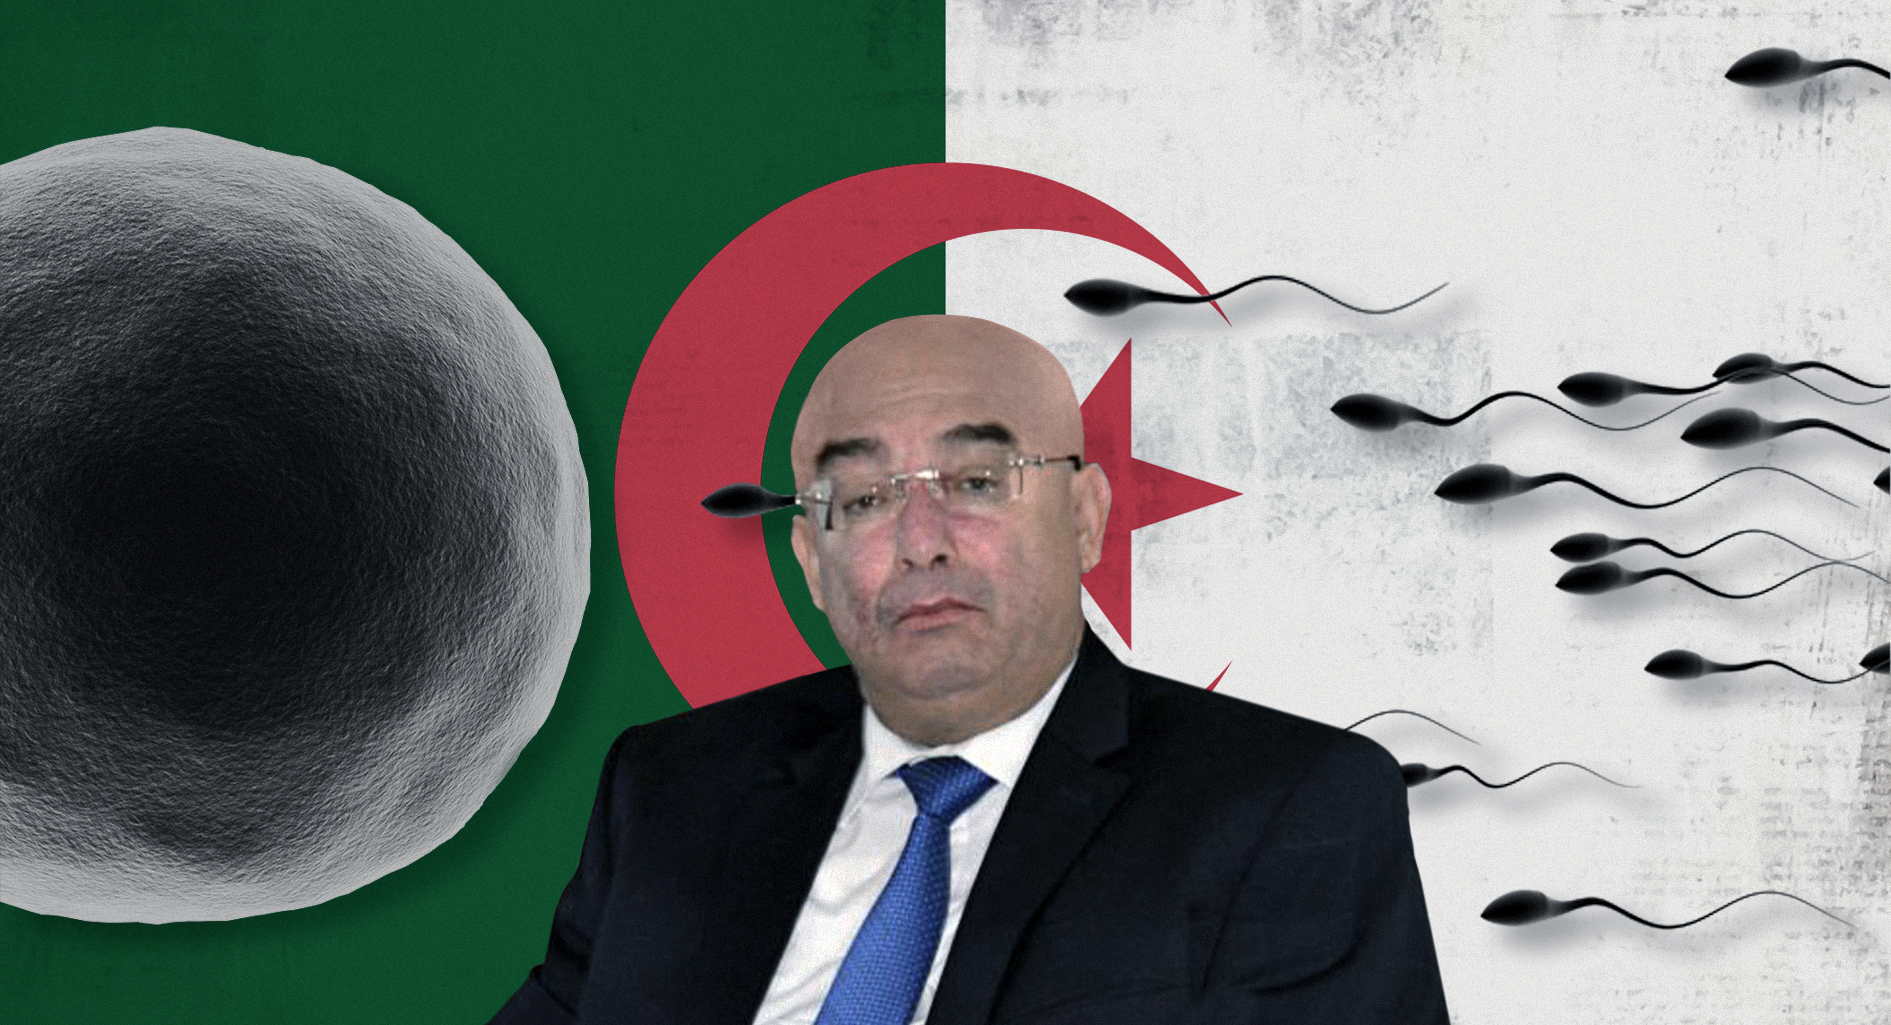 صورة كيف يتكاثر المعارضون للانتخابات وبهذه السرعة رغم أنَّهم مثليون؟ وزير الداخلية الجزائري يتساءل والحدود تجيب